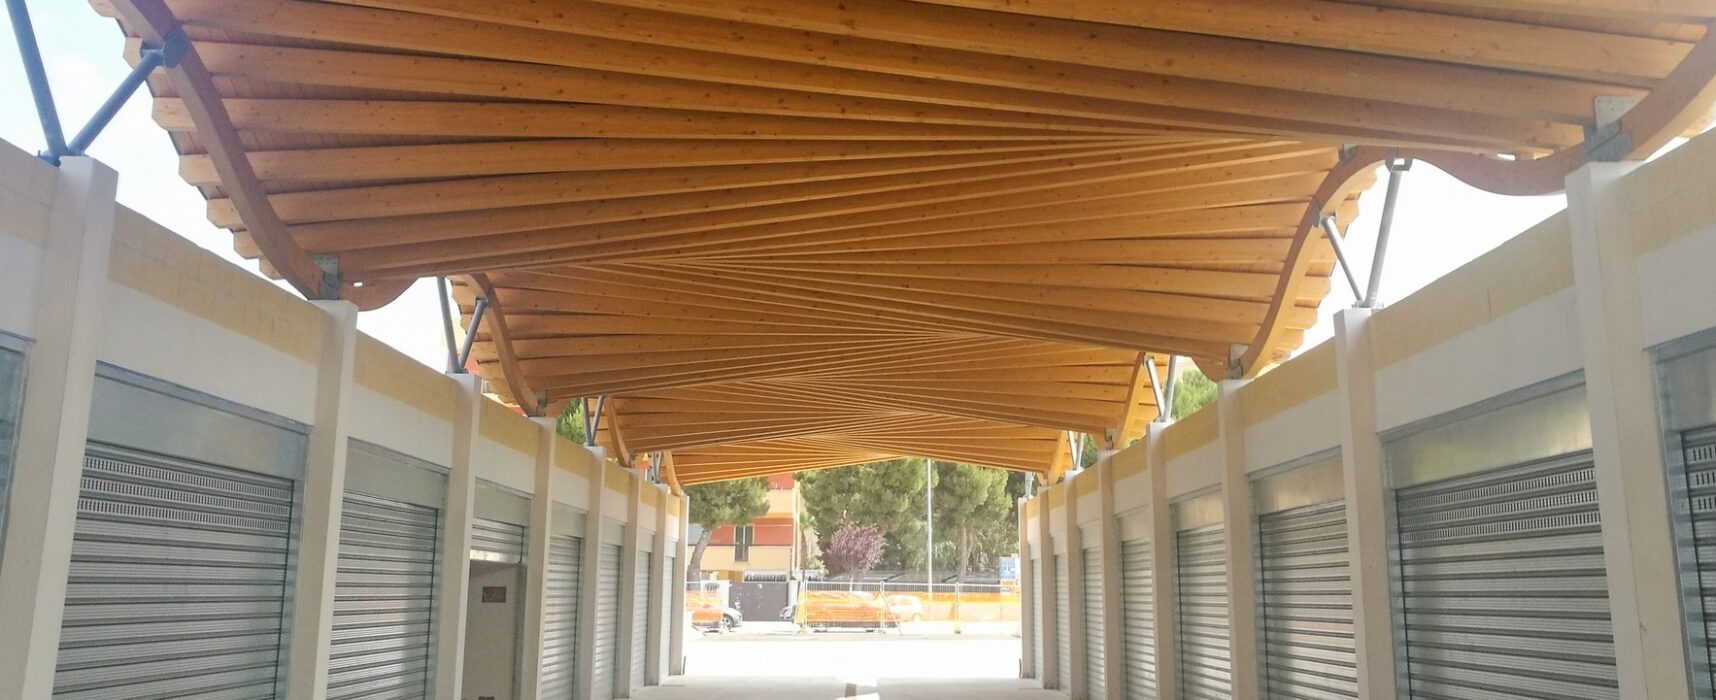 Inaugurazione area mercatale, Spina: “Angarano inviti chi ha ideato e finanziato progetto”